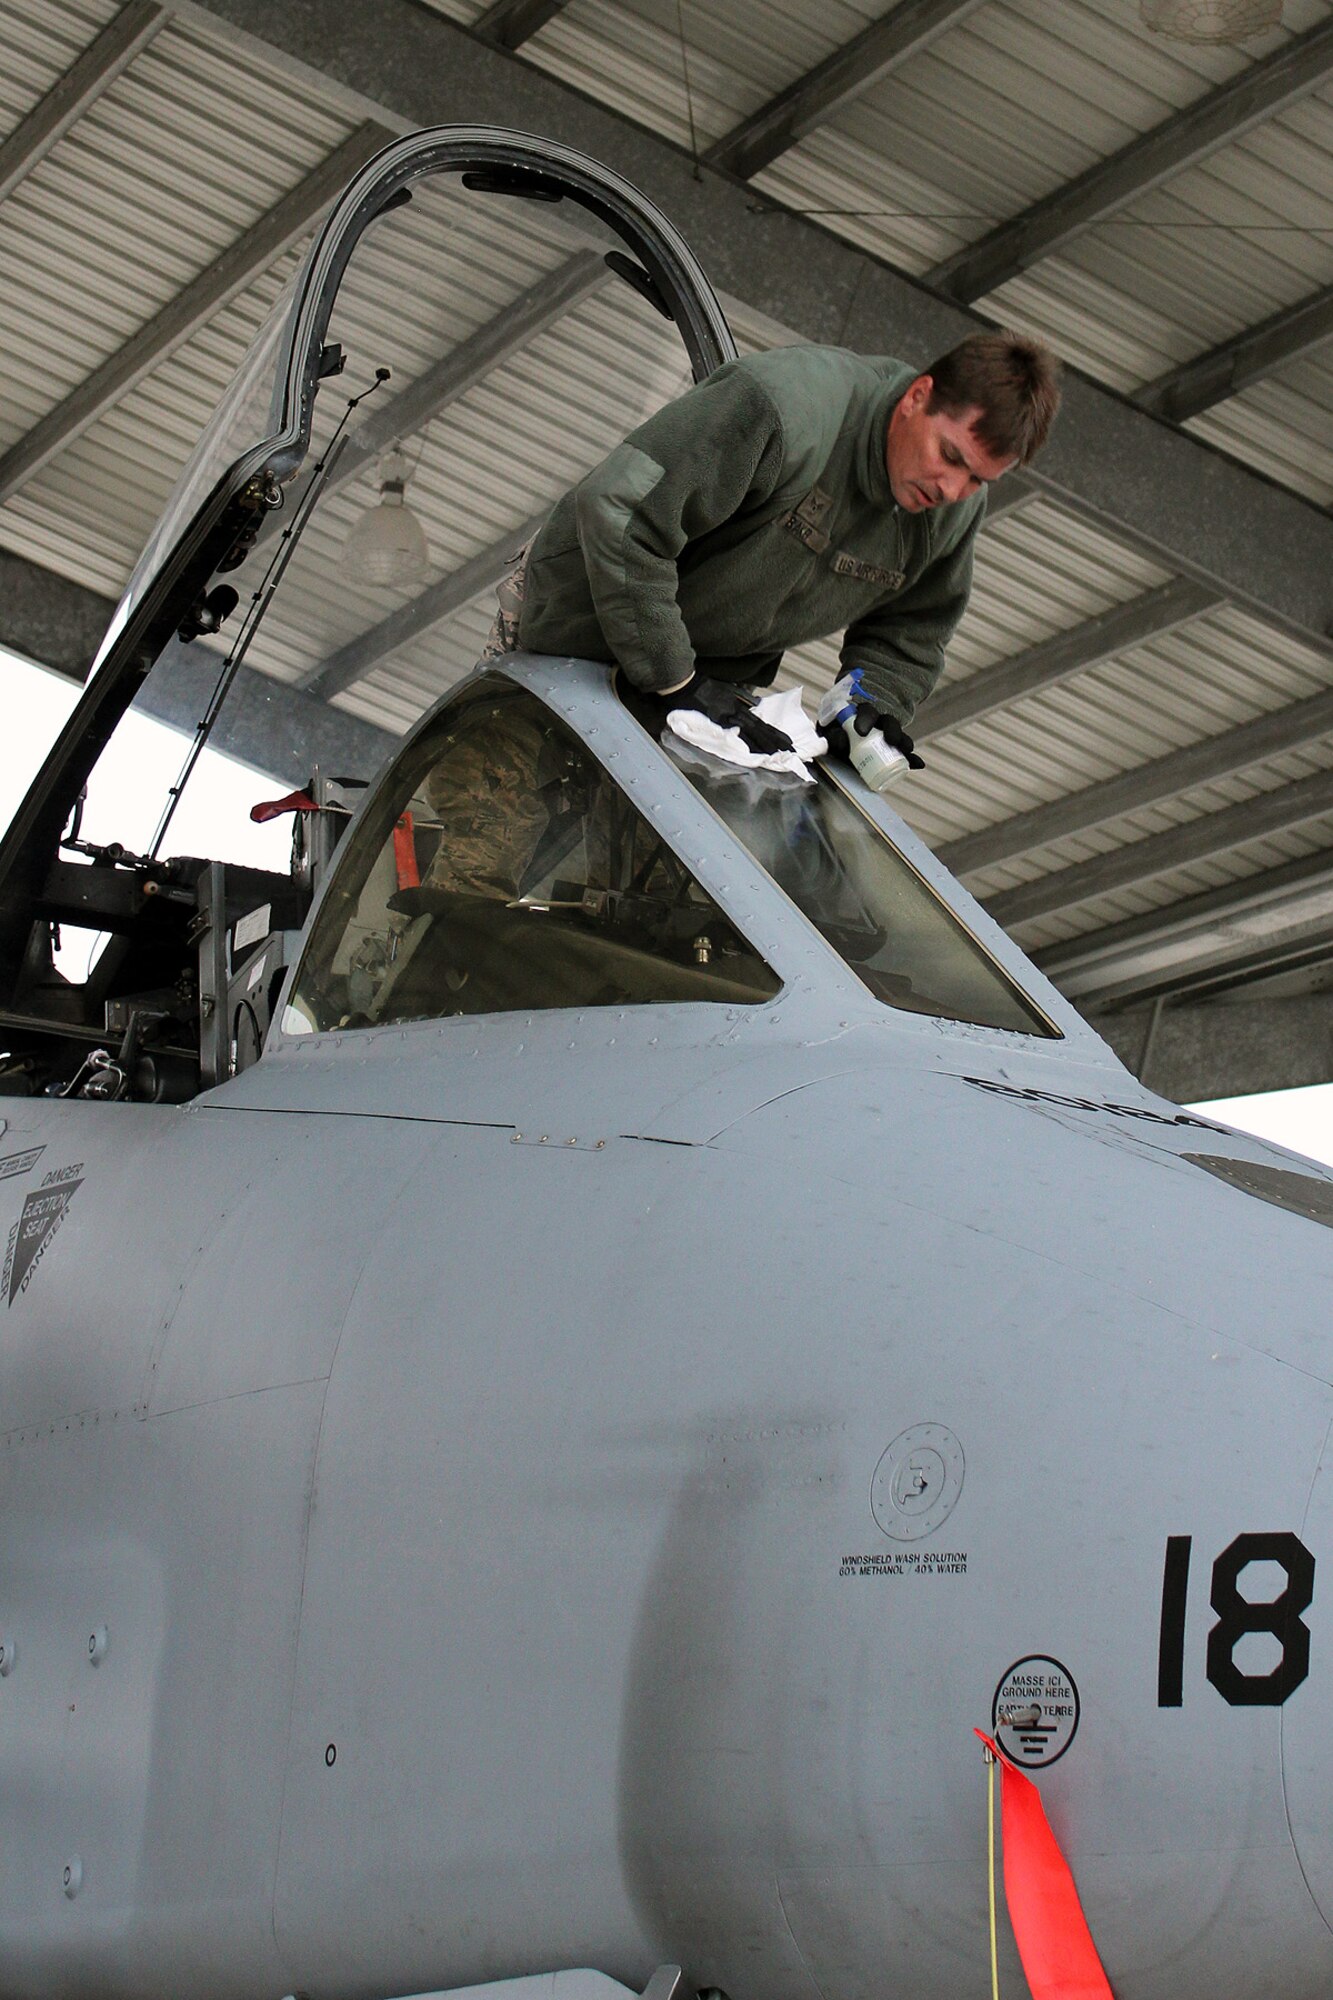 Operations Resume At Selfridge Air National Guard Base 127th Wing